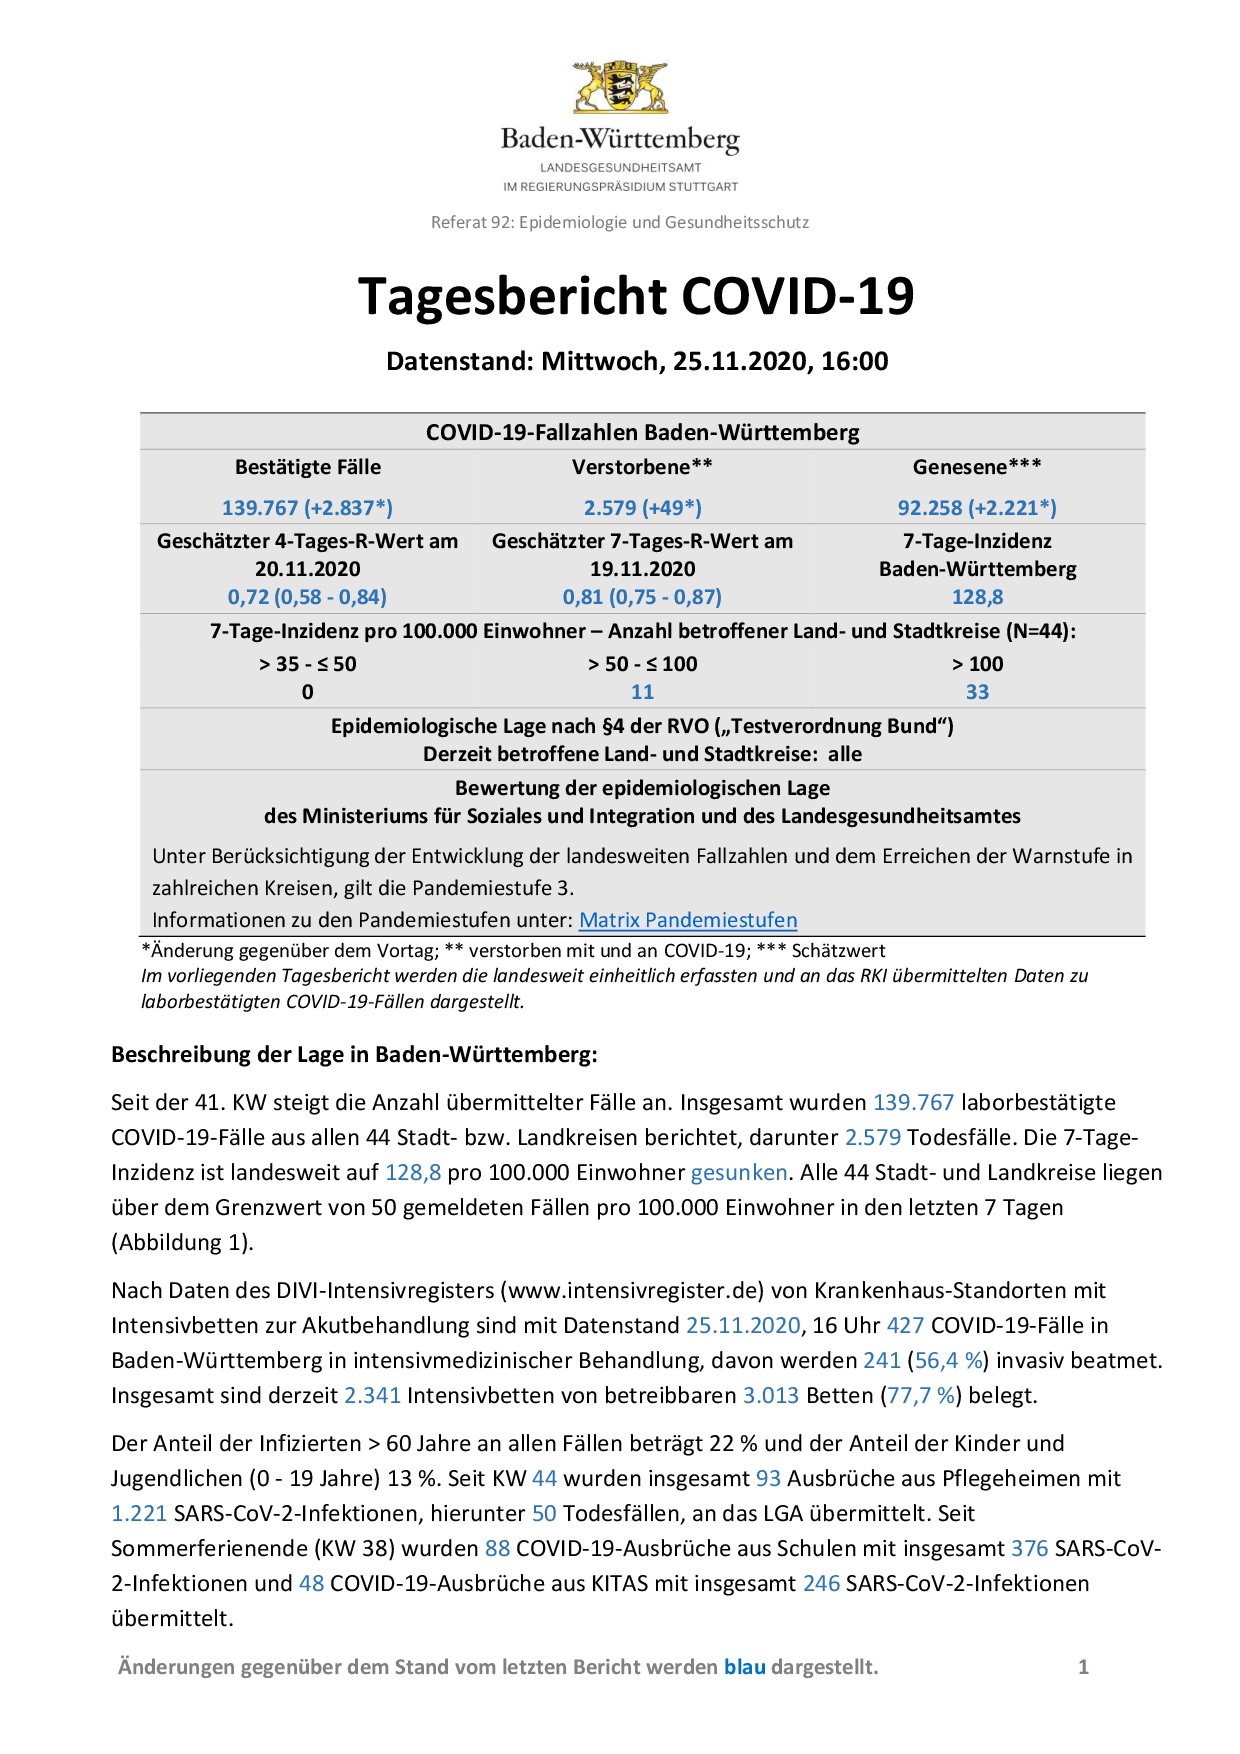 COVID-19 Tagesbericht (25.11.2020) des Landesgesundheitsamts Baden-Württemberg – (ausführlicher)